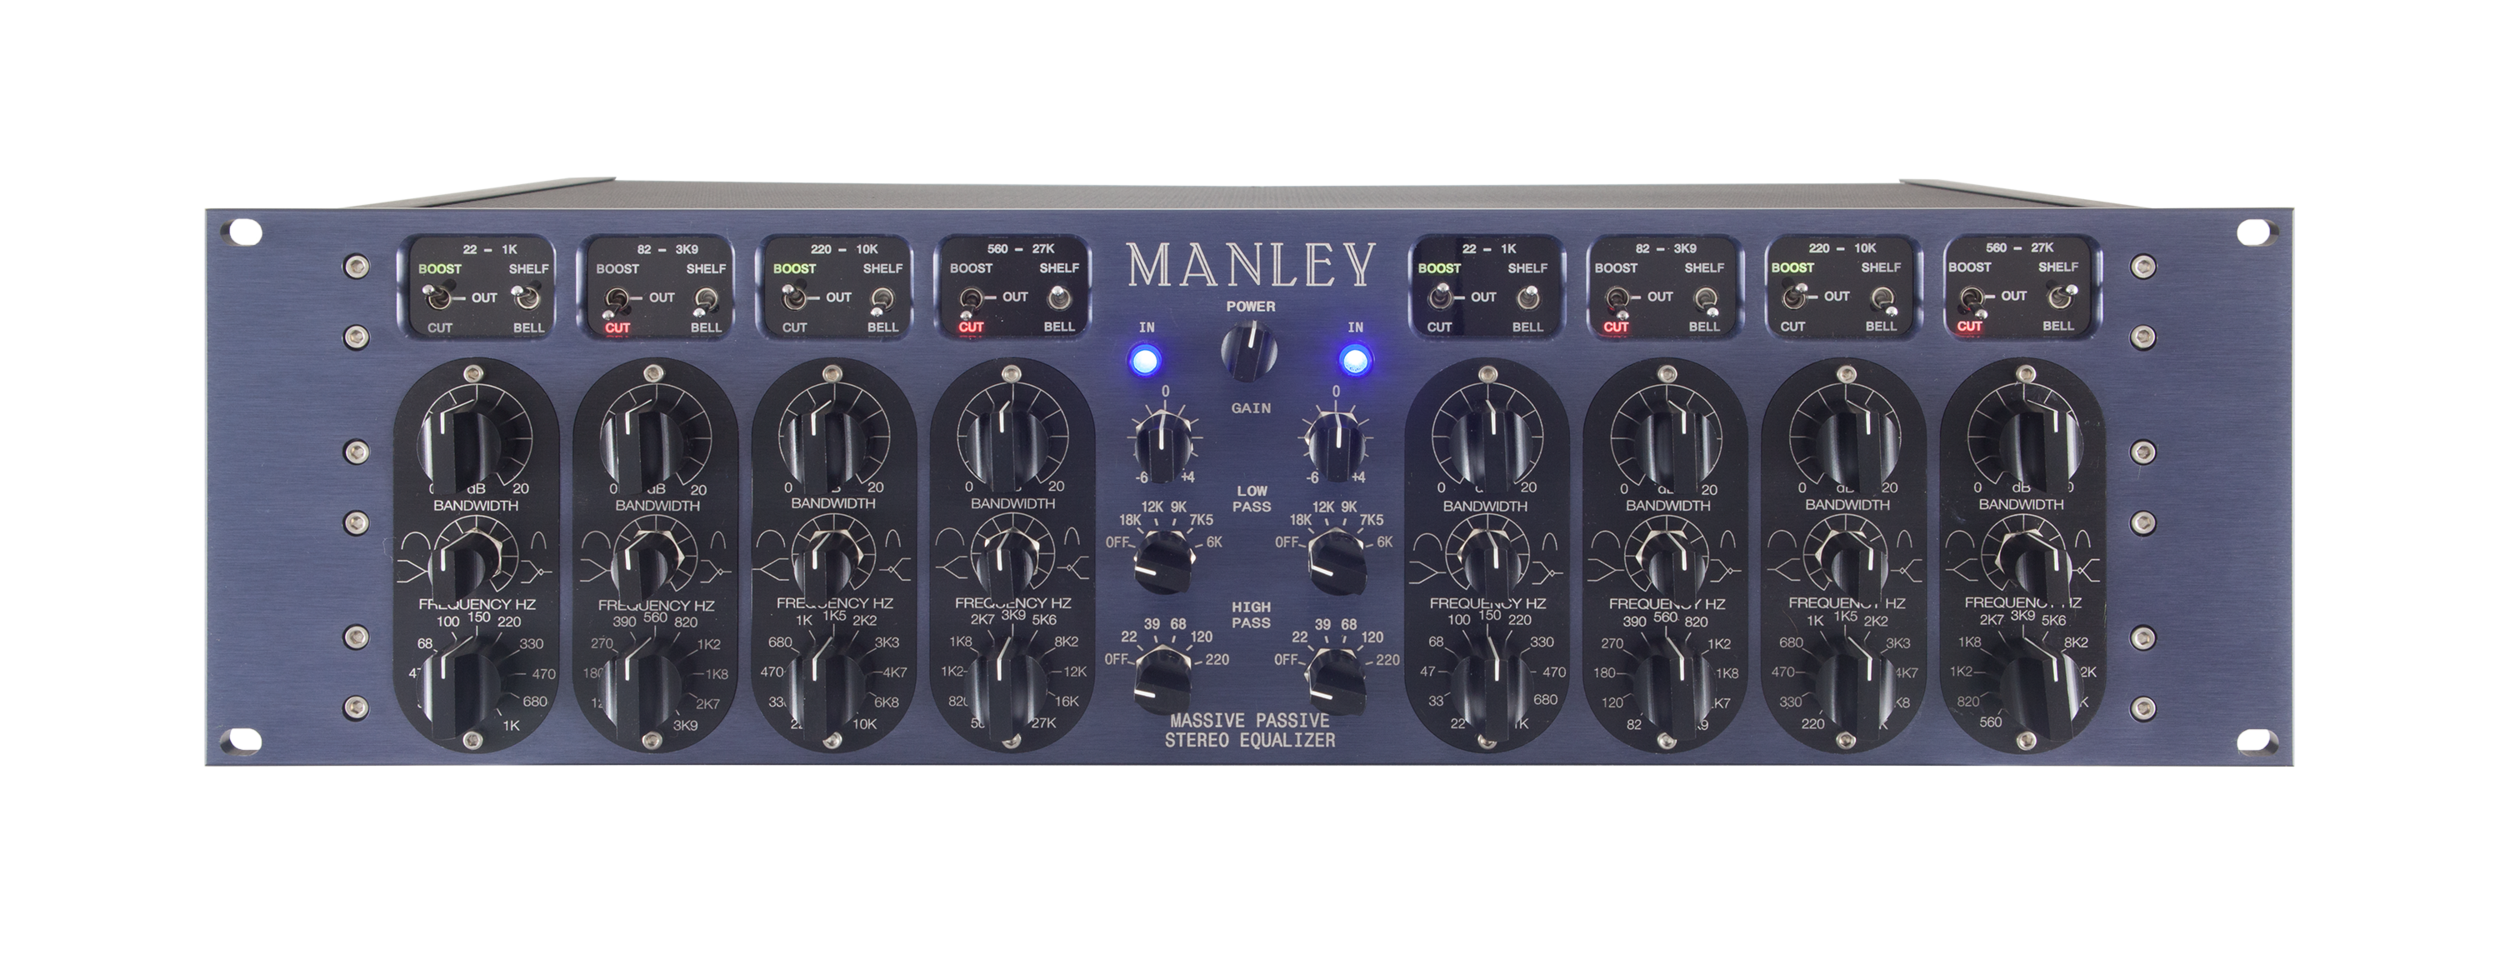 Manley Massive Passive stereo Tube EQ